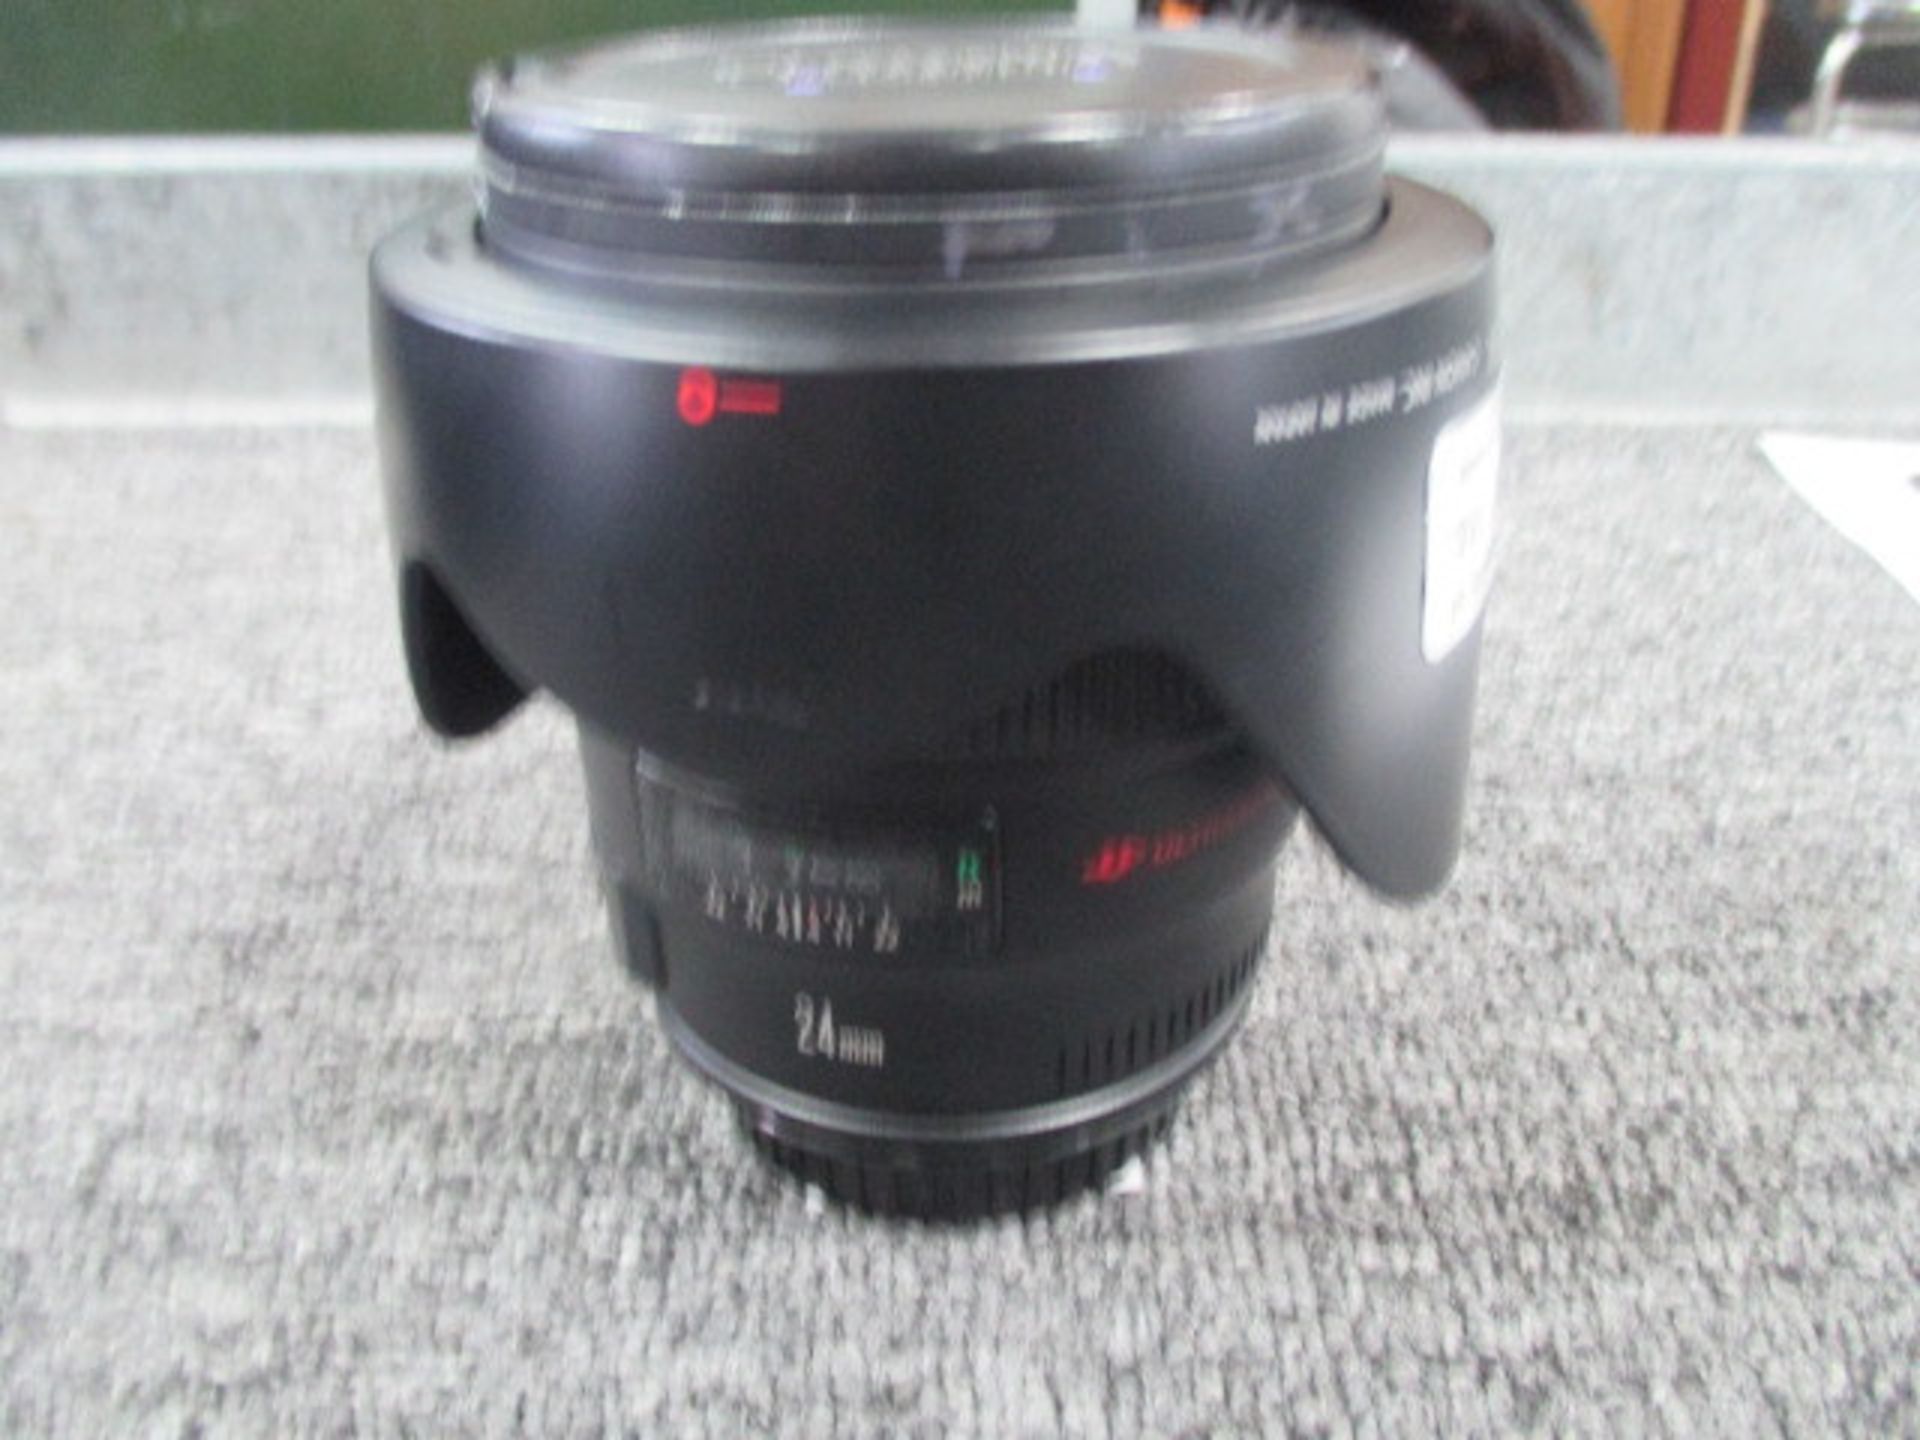 Canon EF 24mm F1.4L II USM Lens - Image 2 of 2